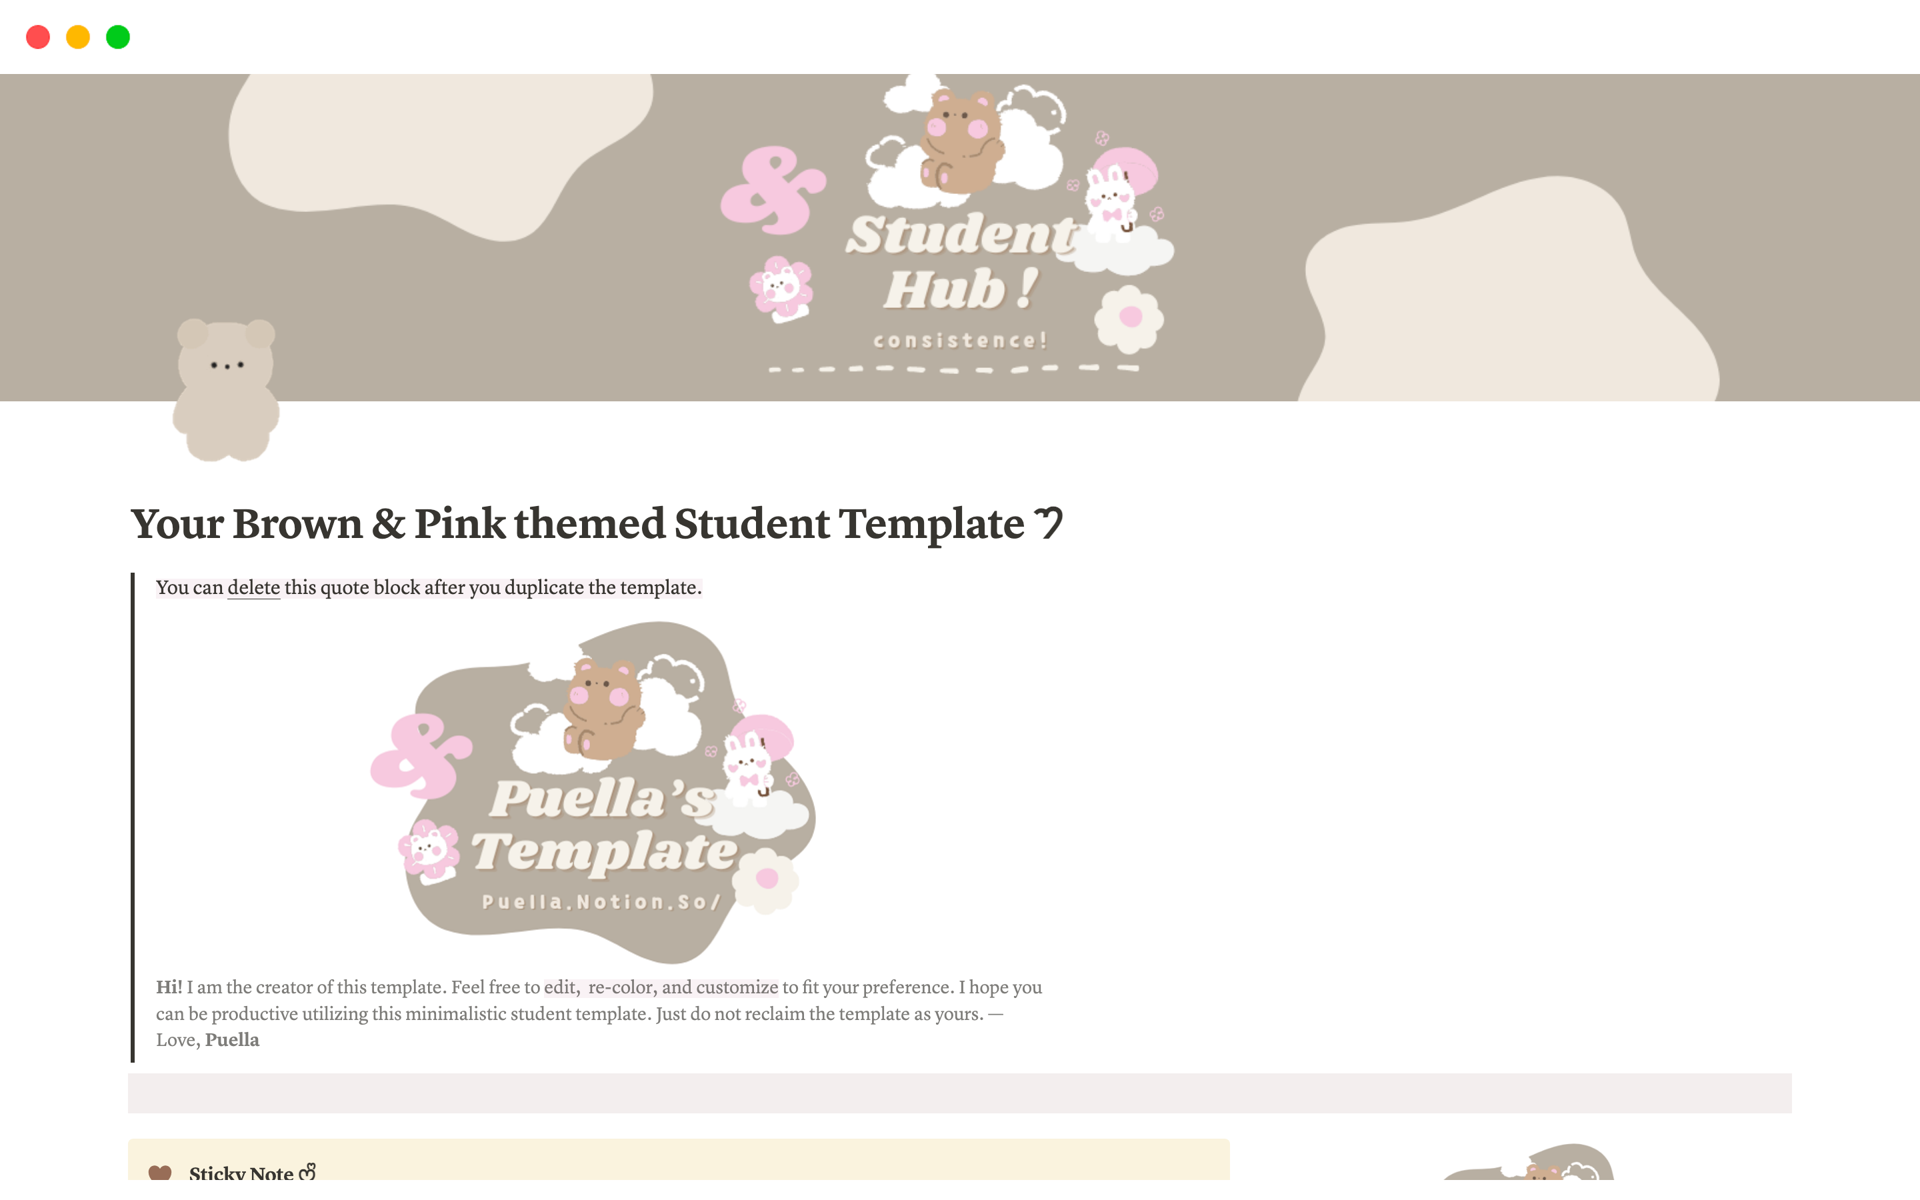 Aperçu du modèle de Brown & Pink themed Student Template